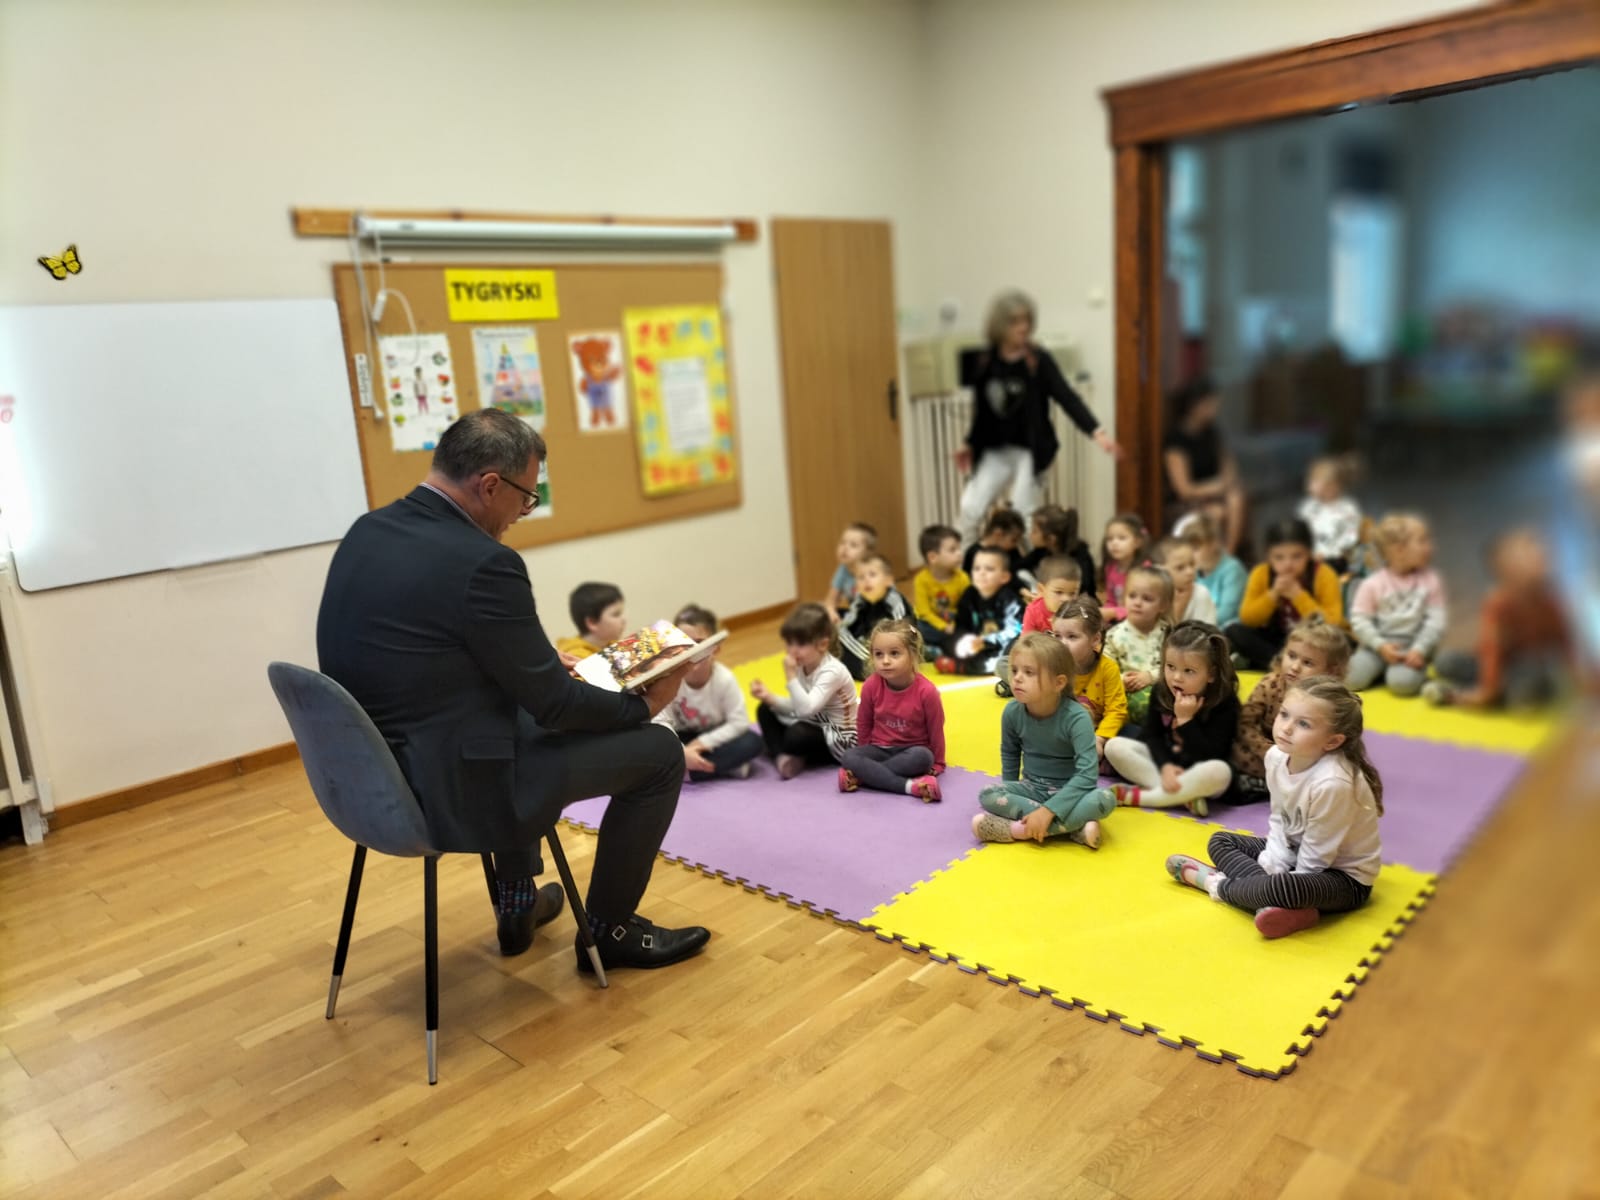 Burmistrz czytaB bajki dzieciom